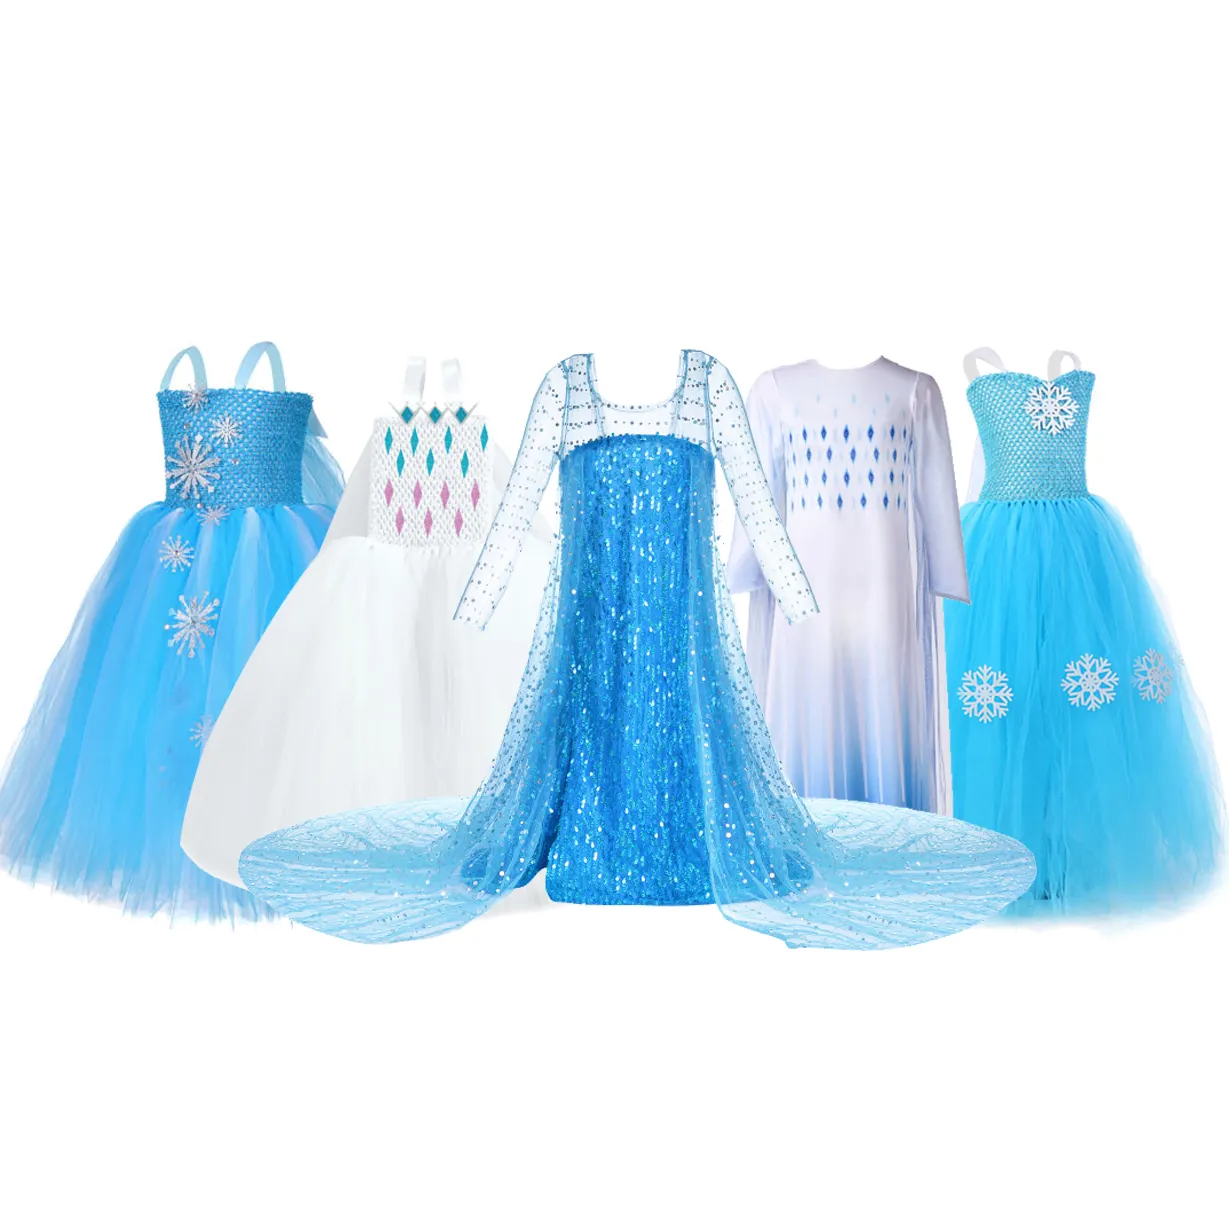 Sommer Kinder Kleidung blau gefroren Baby Schnee königin Party tragen Elsa Cosplay lässig gefroren 2 Mädchen Kleid